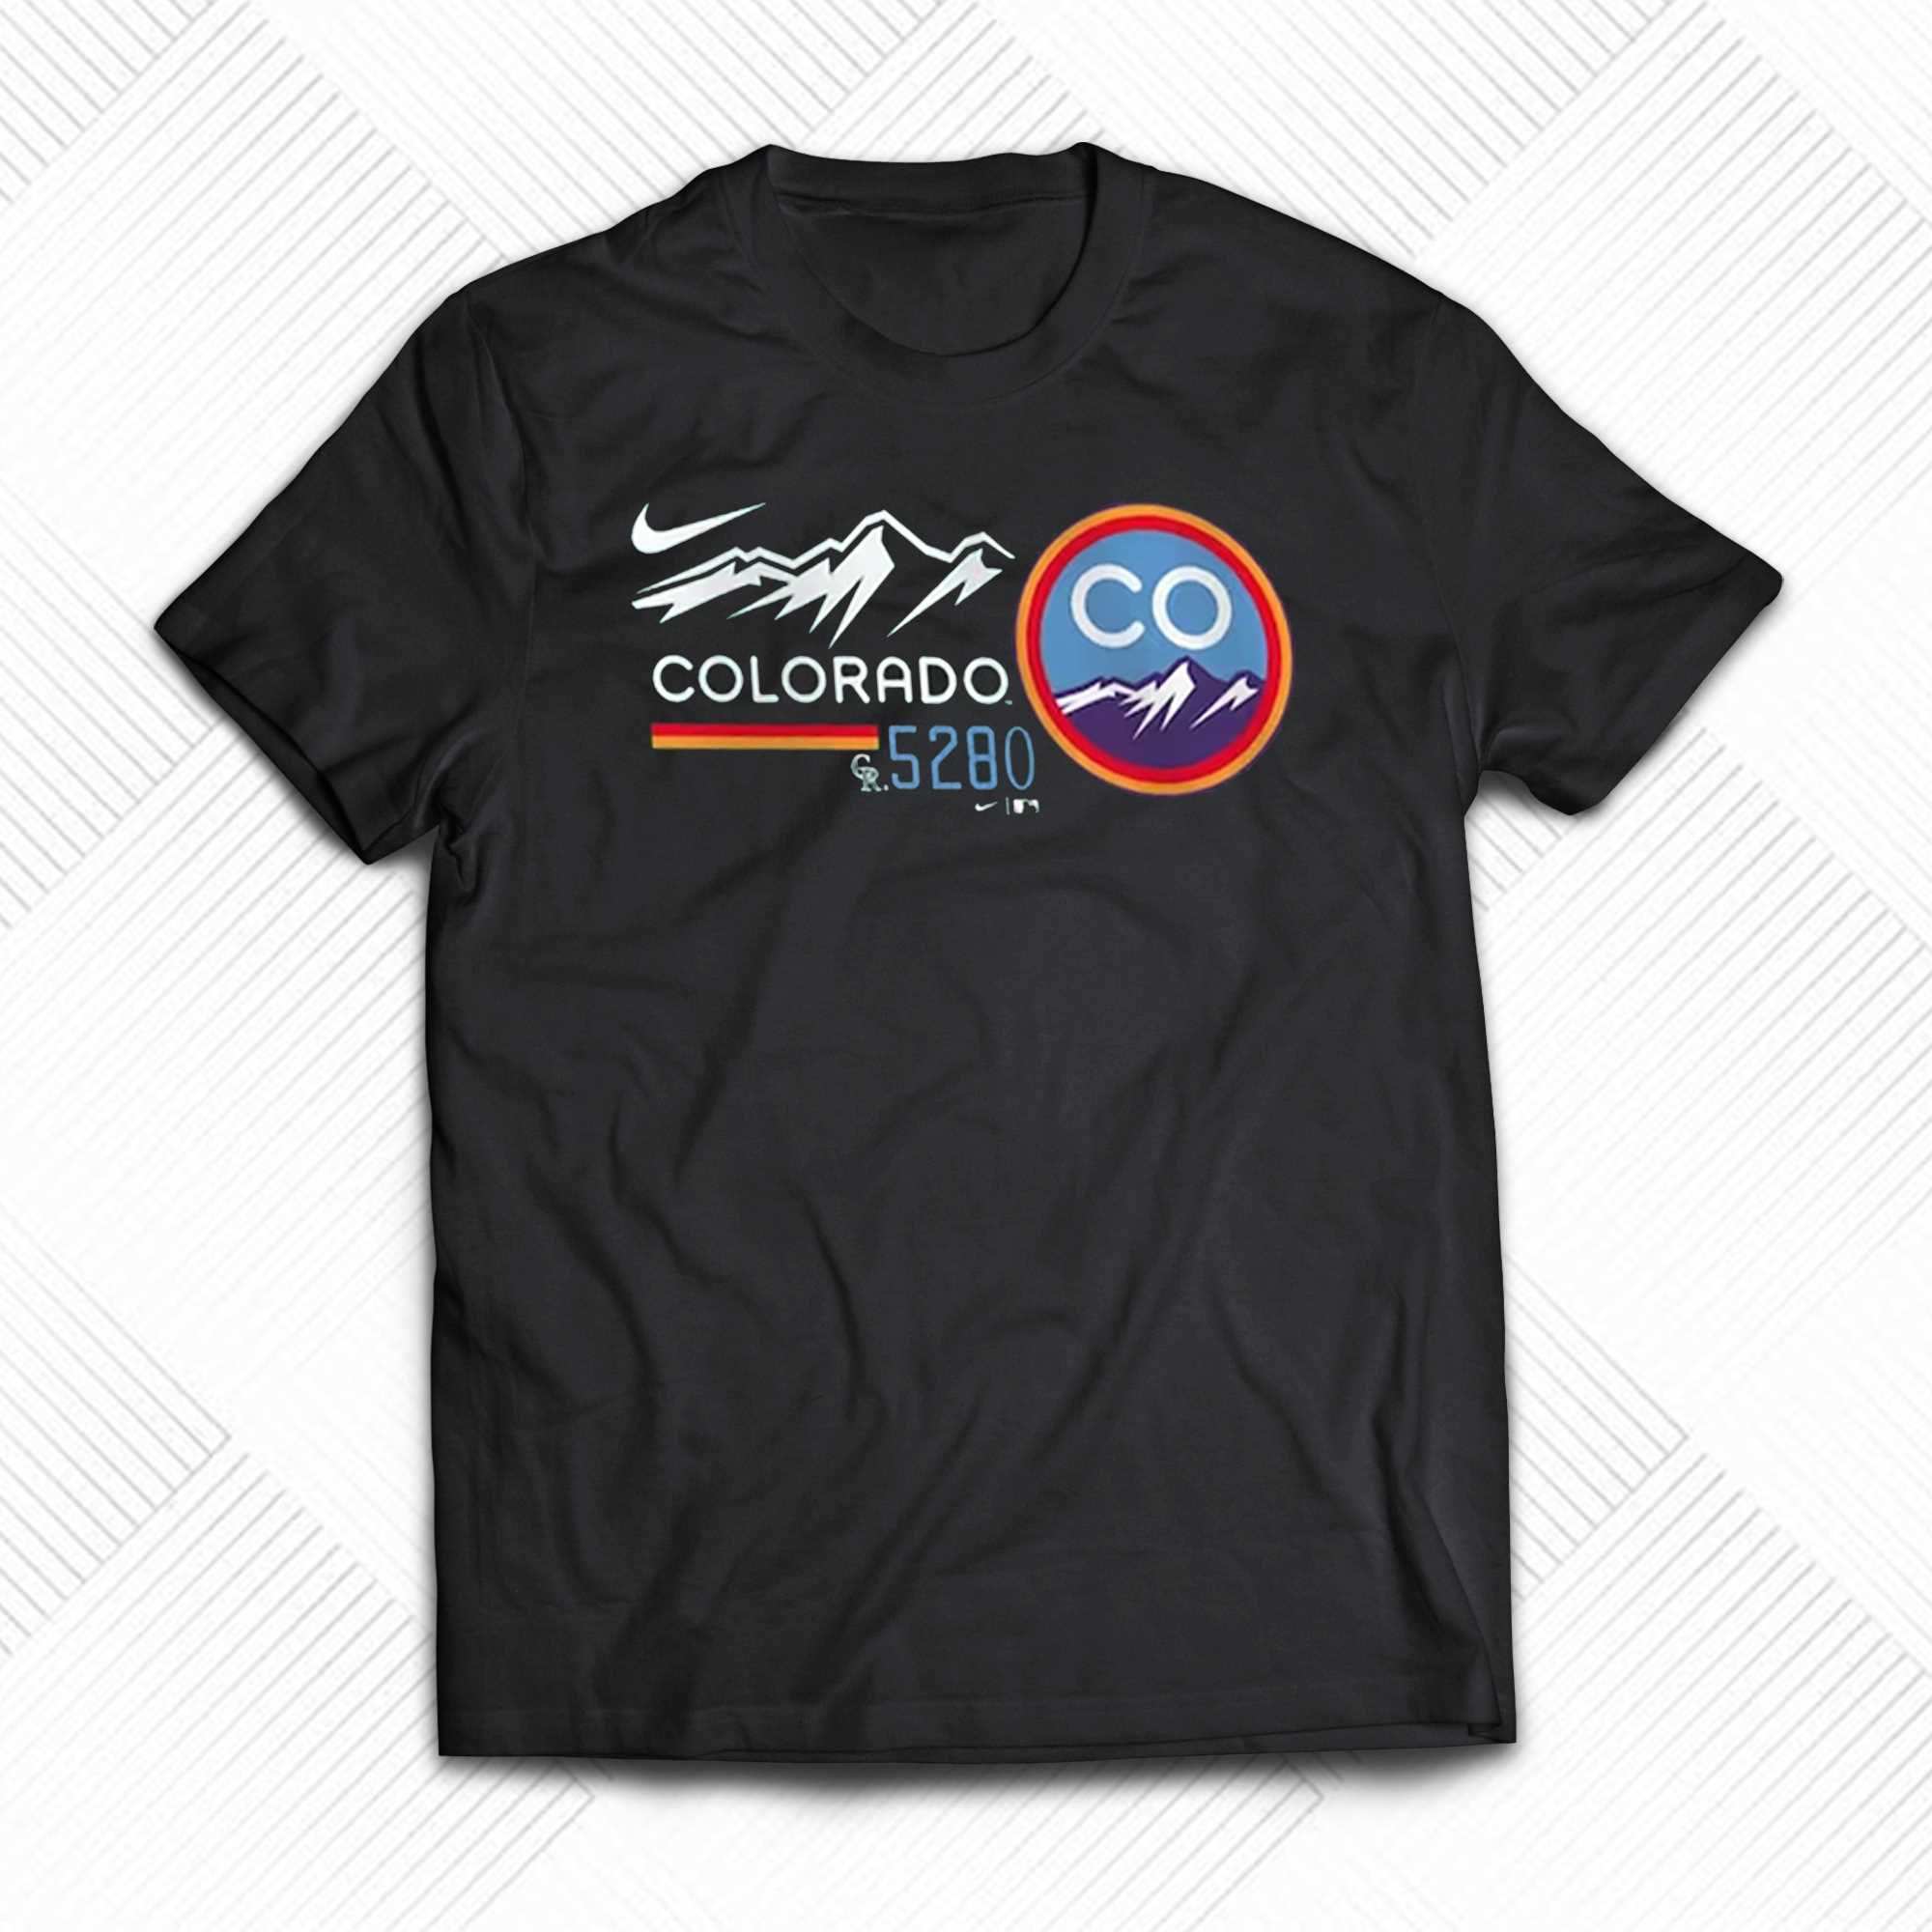 Colorado Rockies Apparel, Rockies Gear, Merchandise